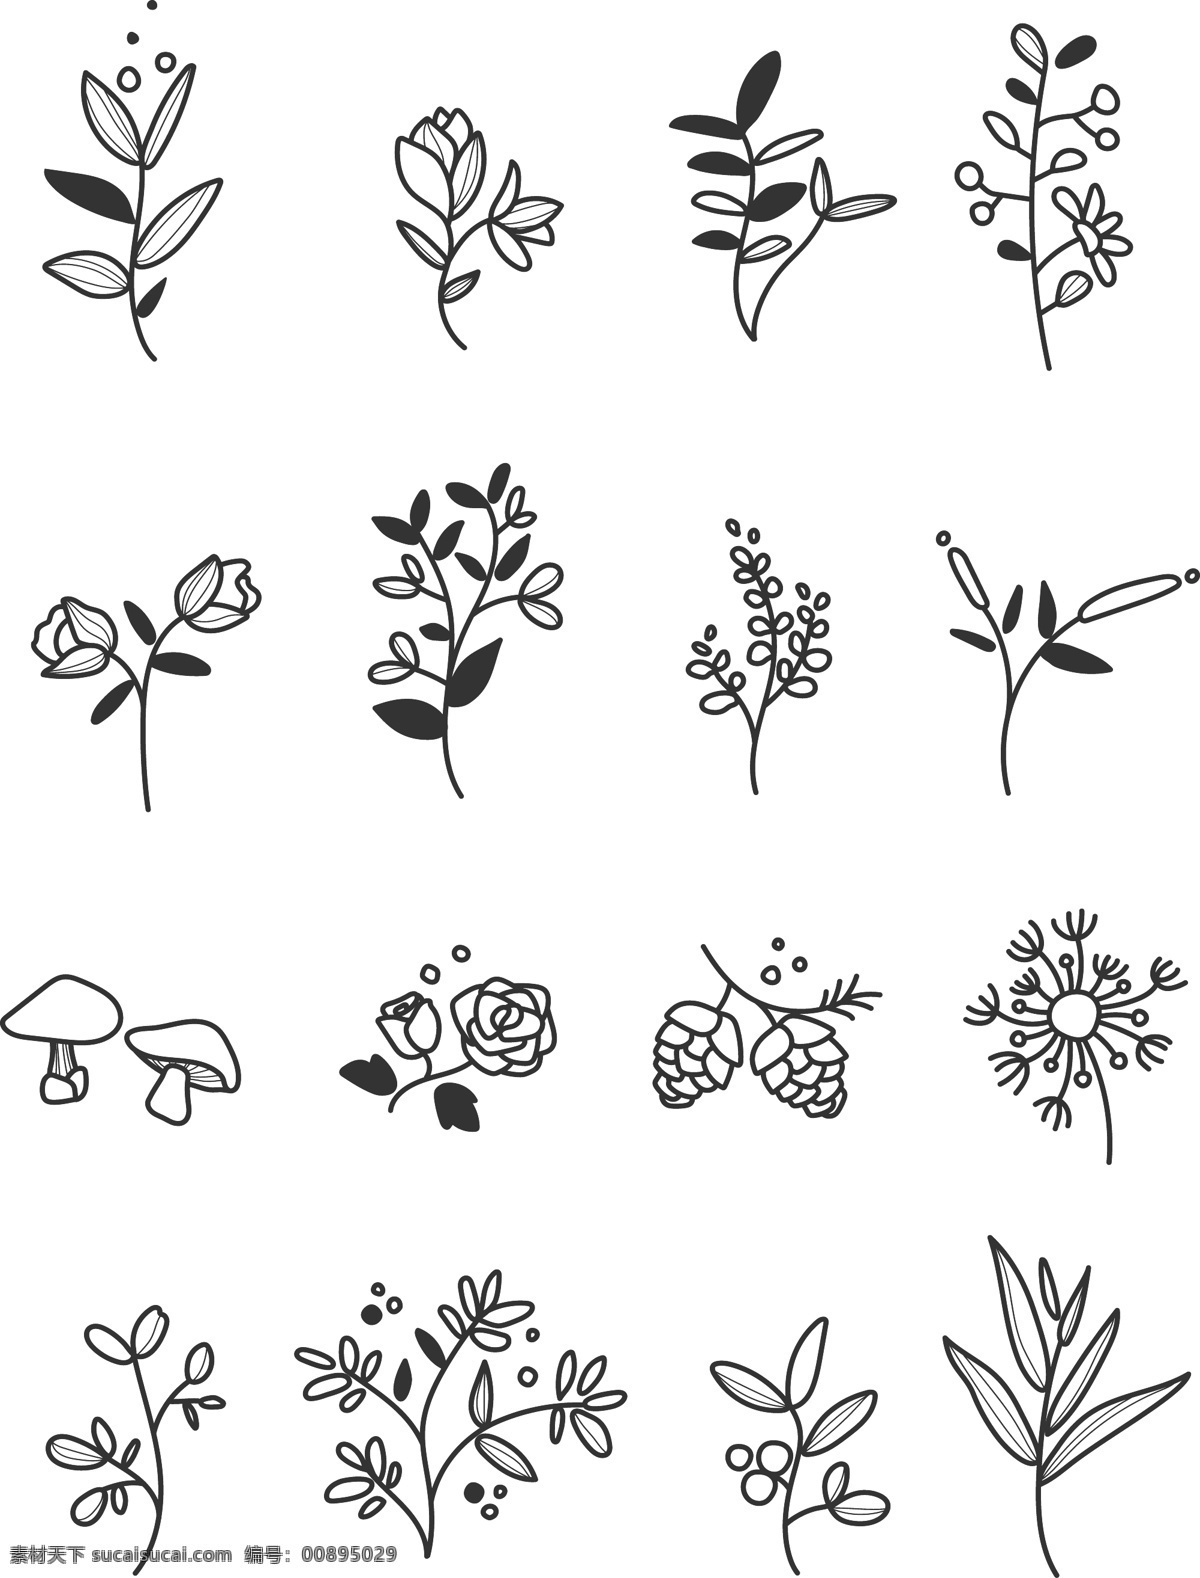 植物 花卉 线 稿 图 植物线稿图 花卉线稿图 插画植物 分层